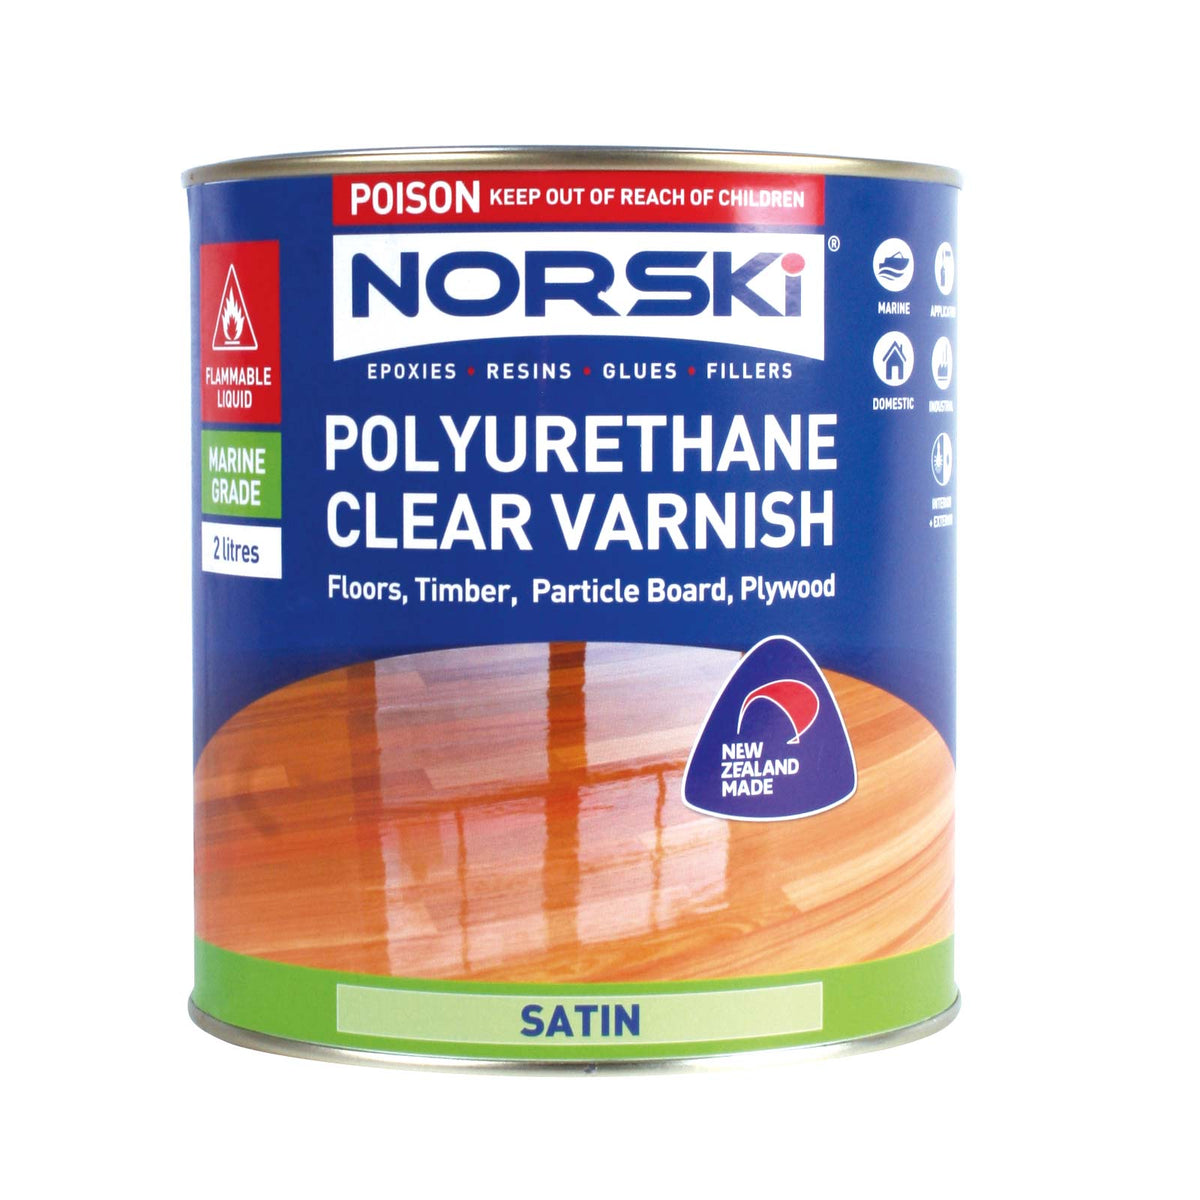 Norski Polyurethane Varnish (Satin)